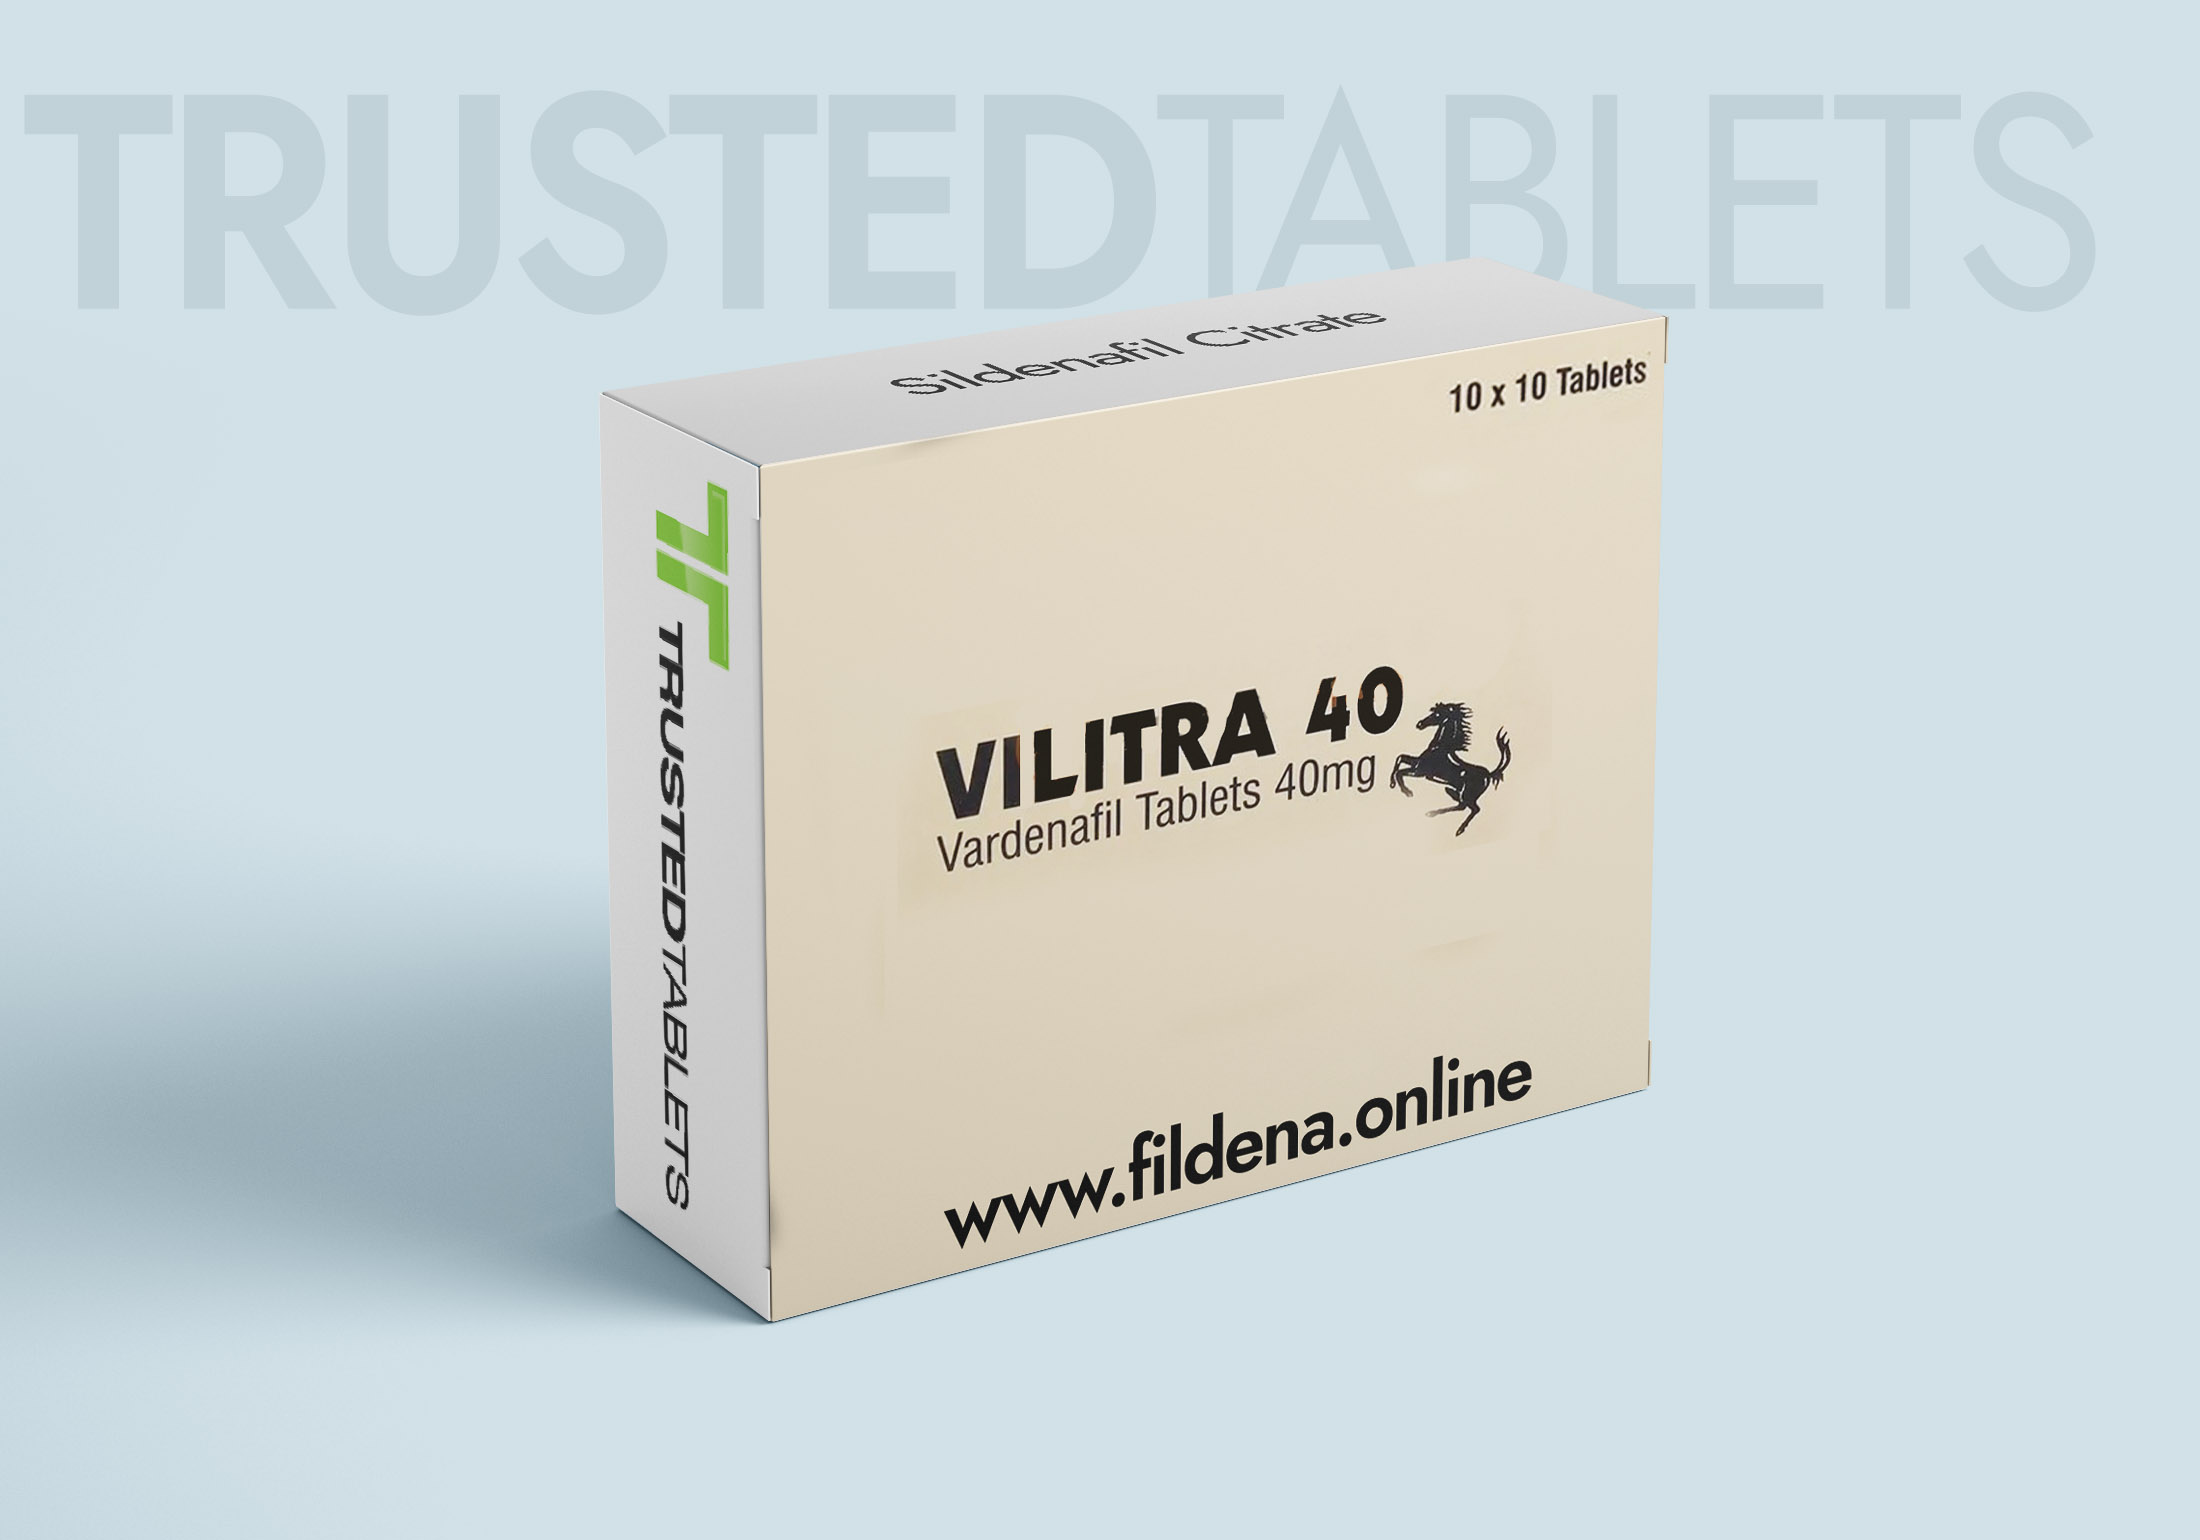 Vilitra TrustedTablets